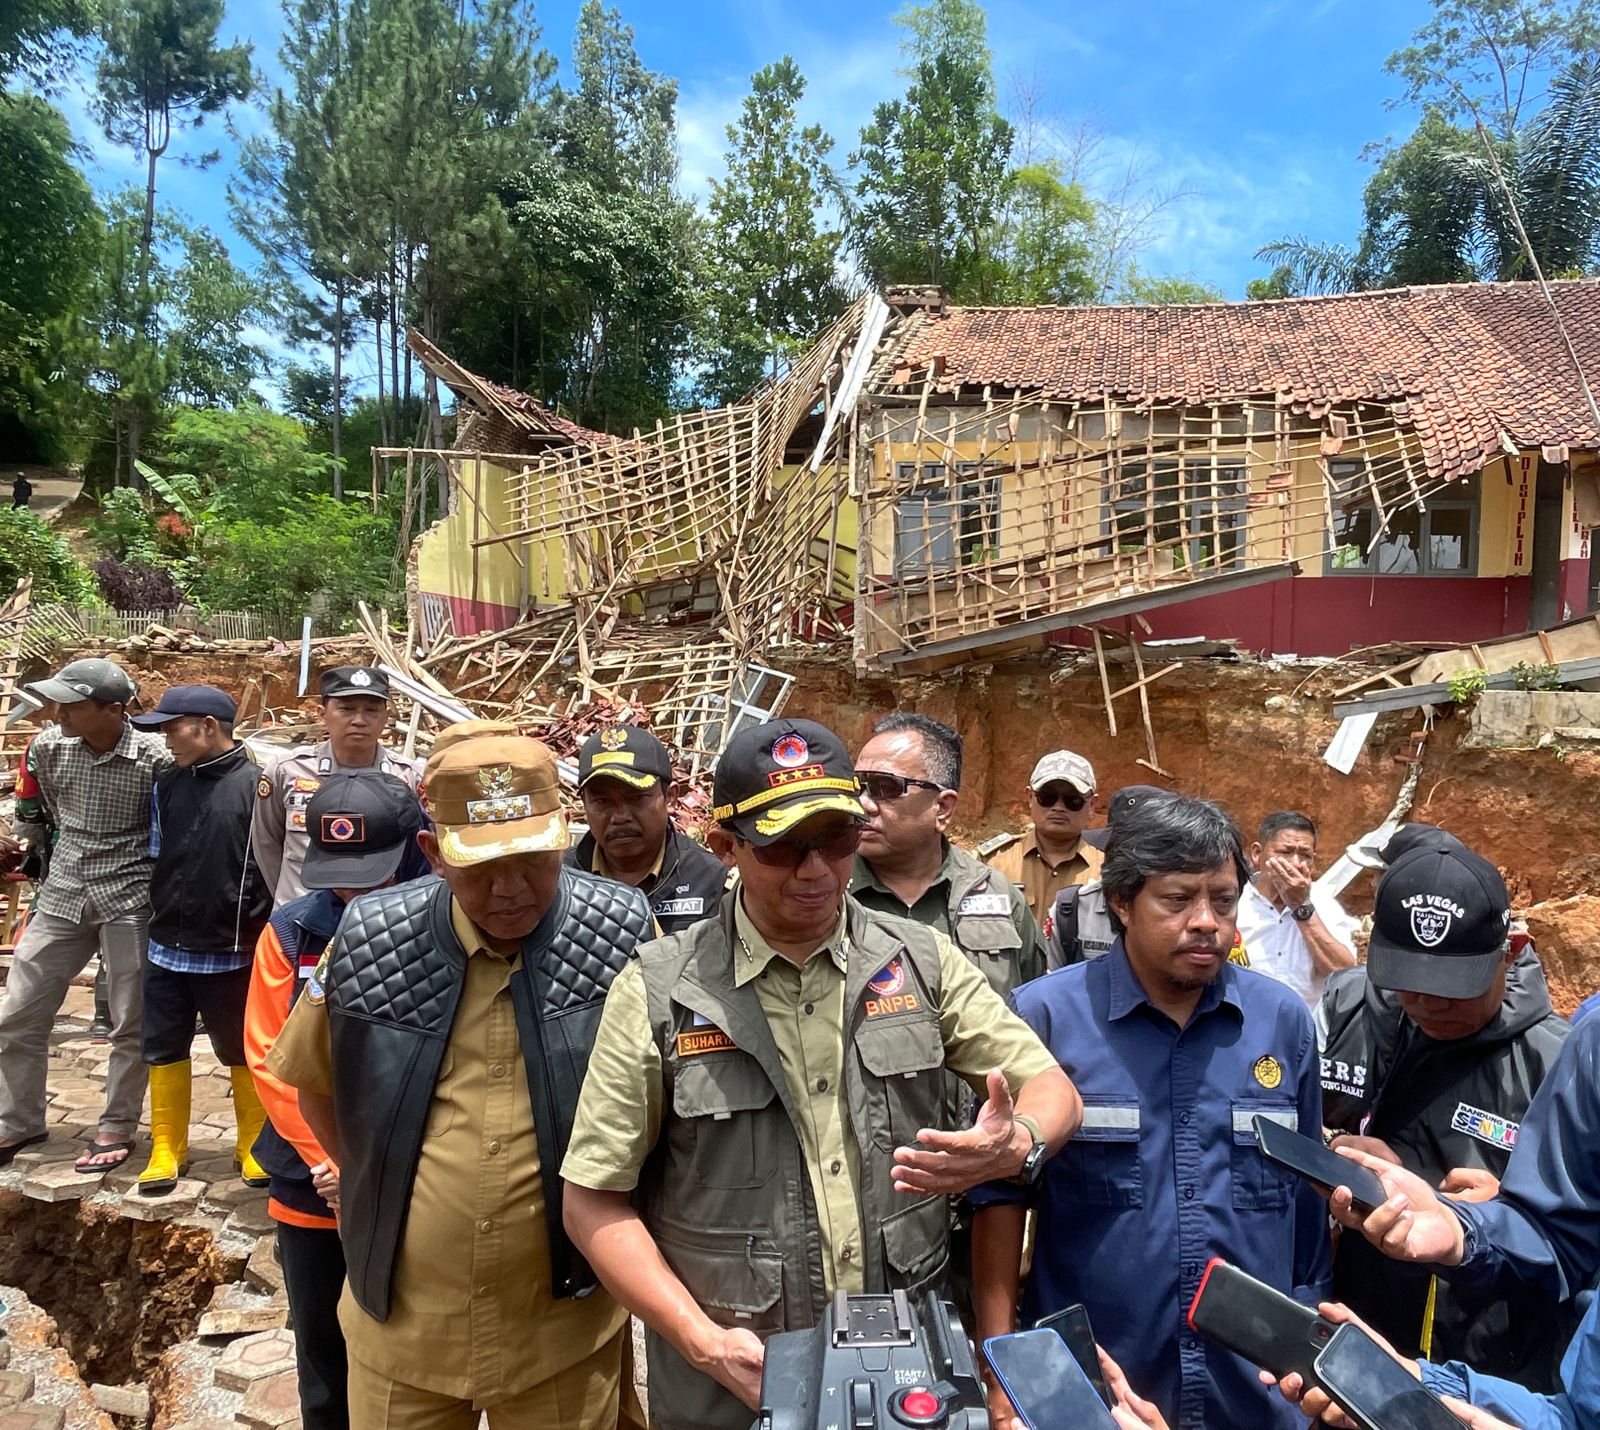 BNPB Dorong Relokasi Cepat Pasca Pergerakan Tanah di Bandung Barat, Anggaran dan Hunian Baru Siap Disediakan